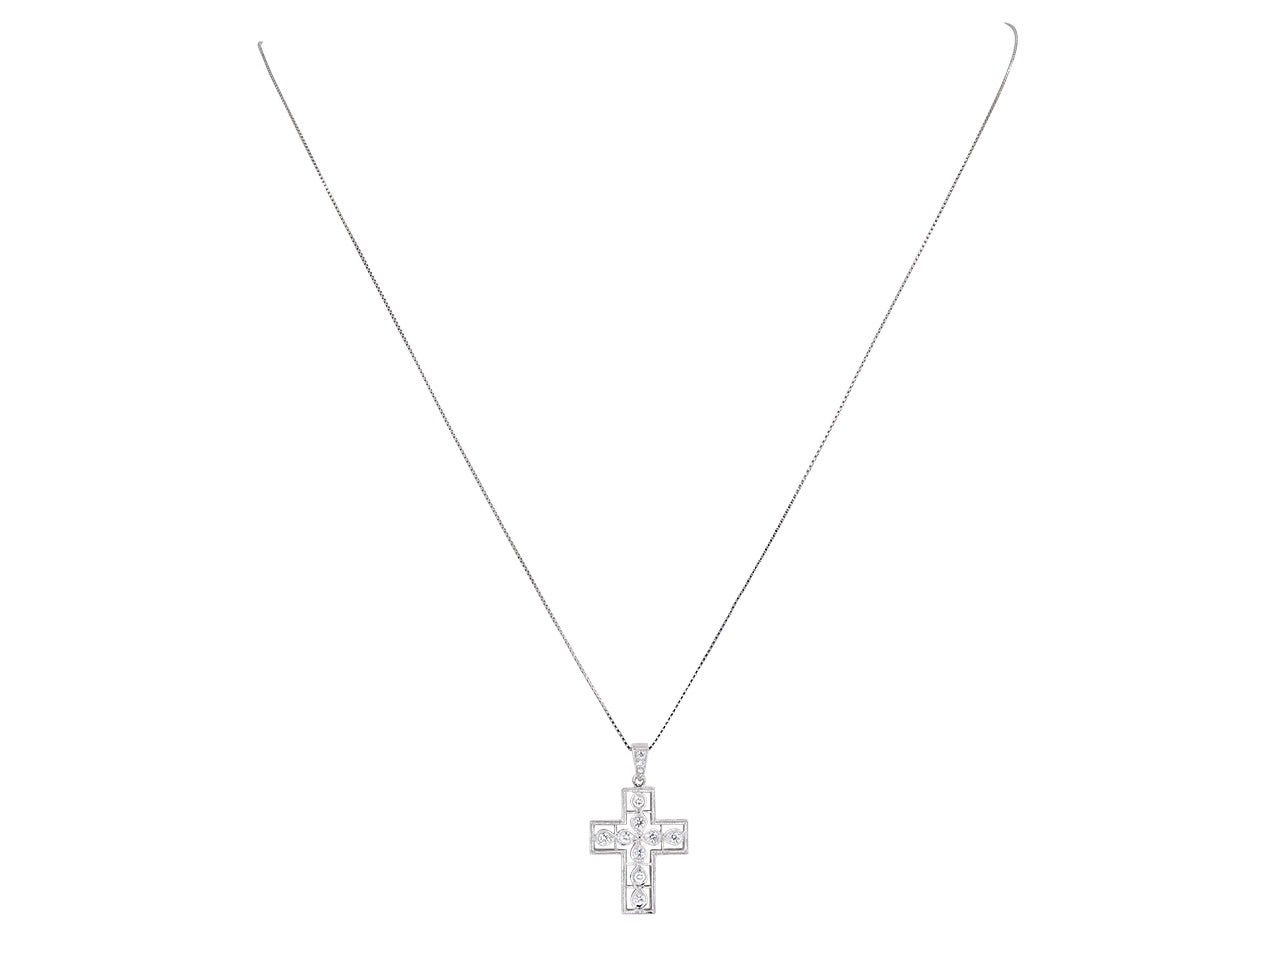 Diamond Cross Pendant in 18K White Gold